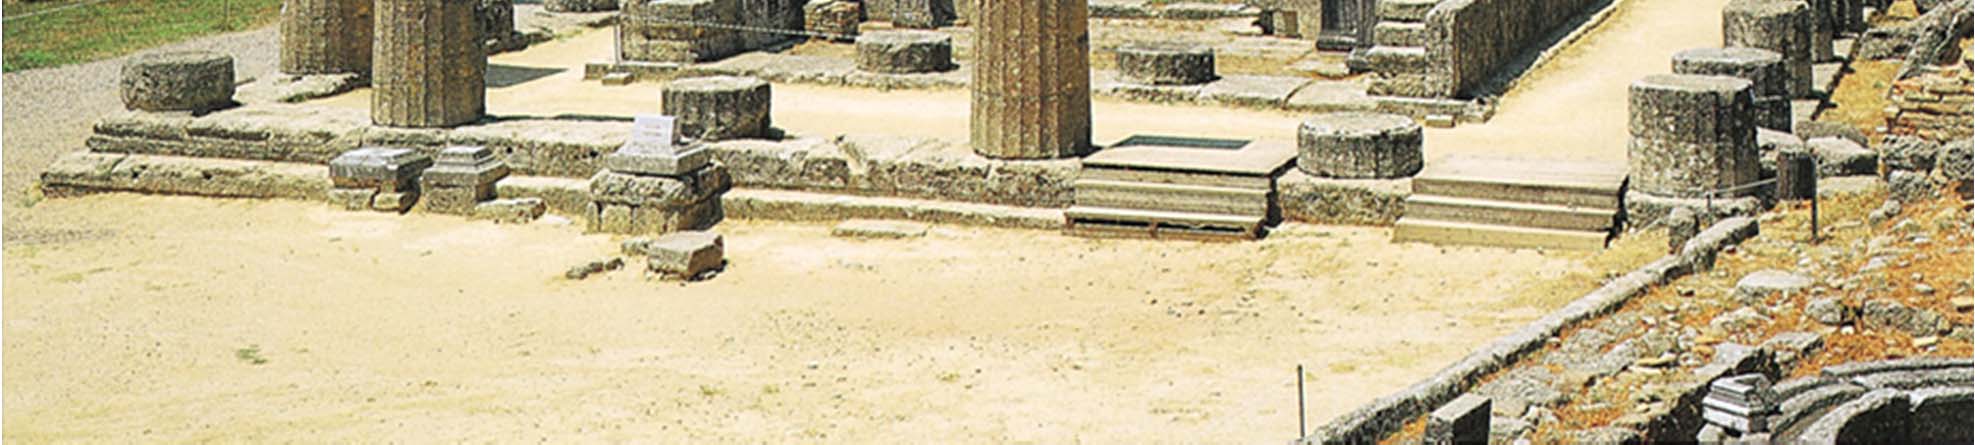 Olimpia, Heraion 600 590 a.